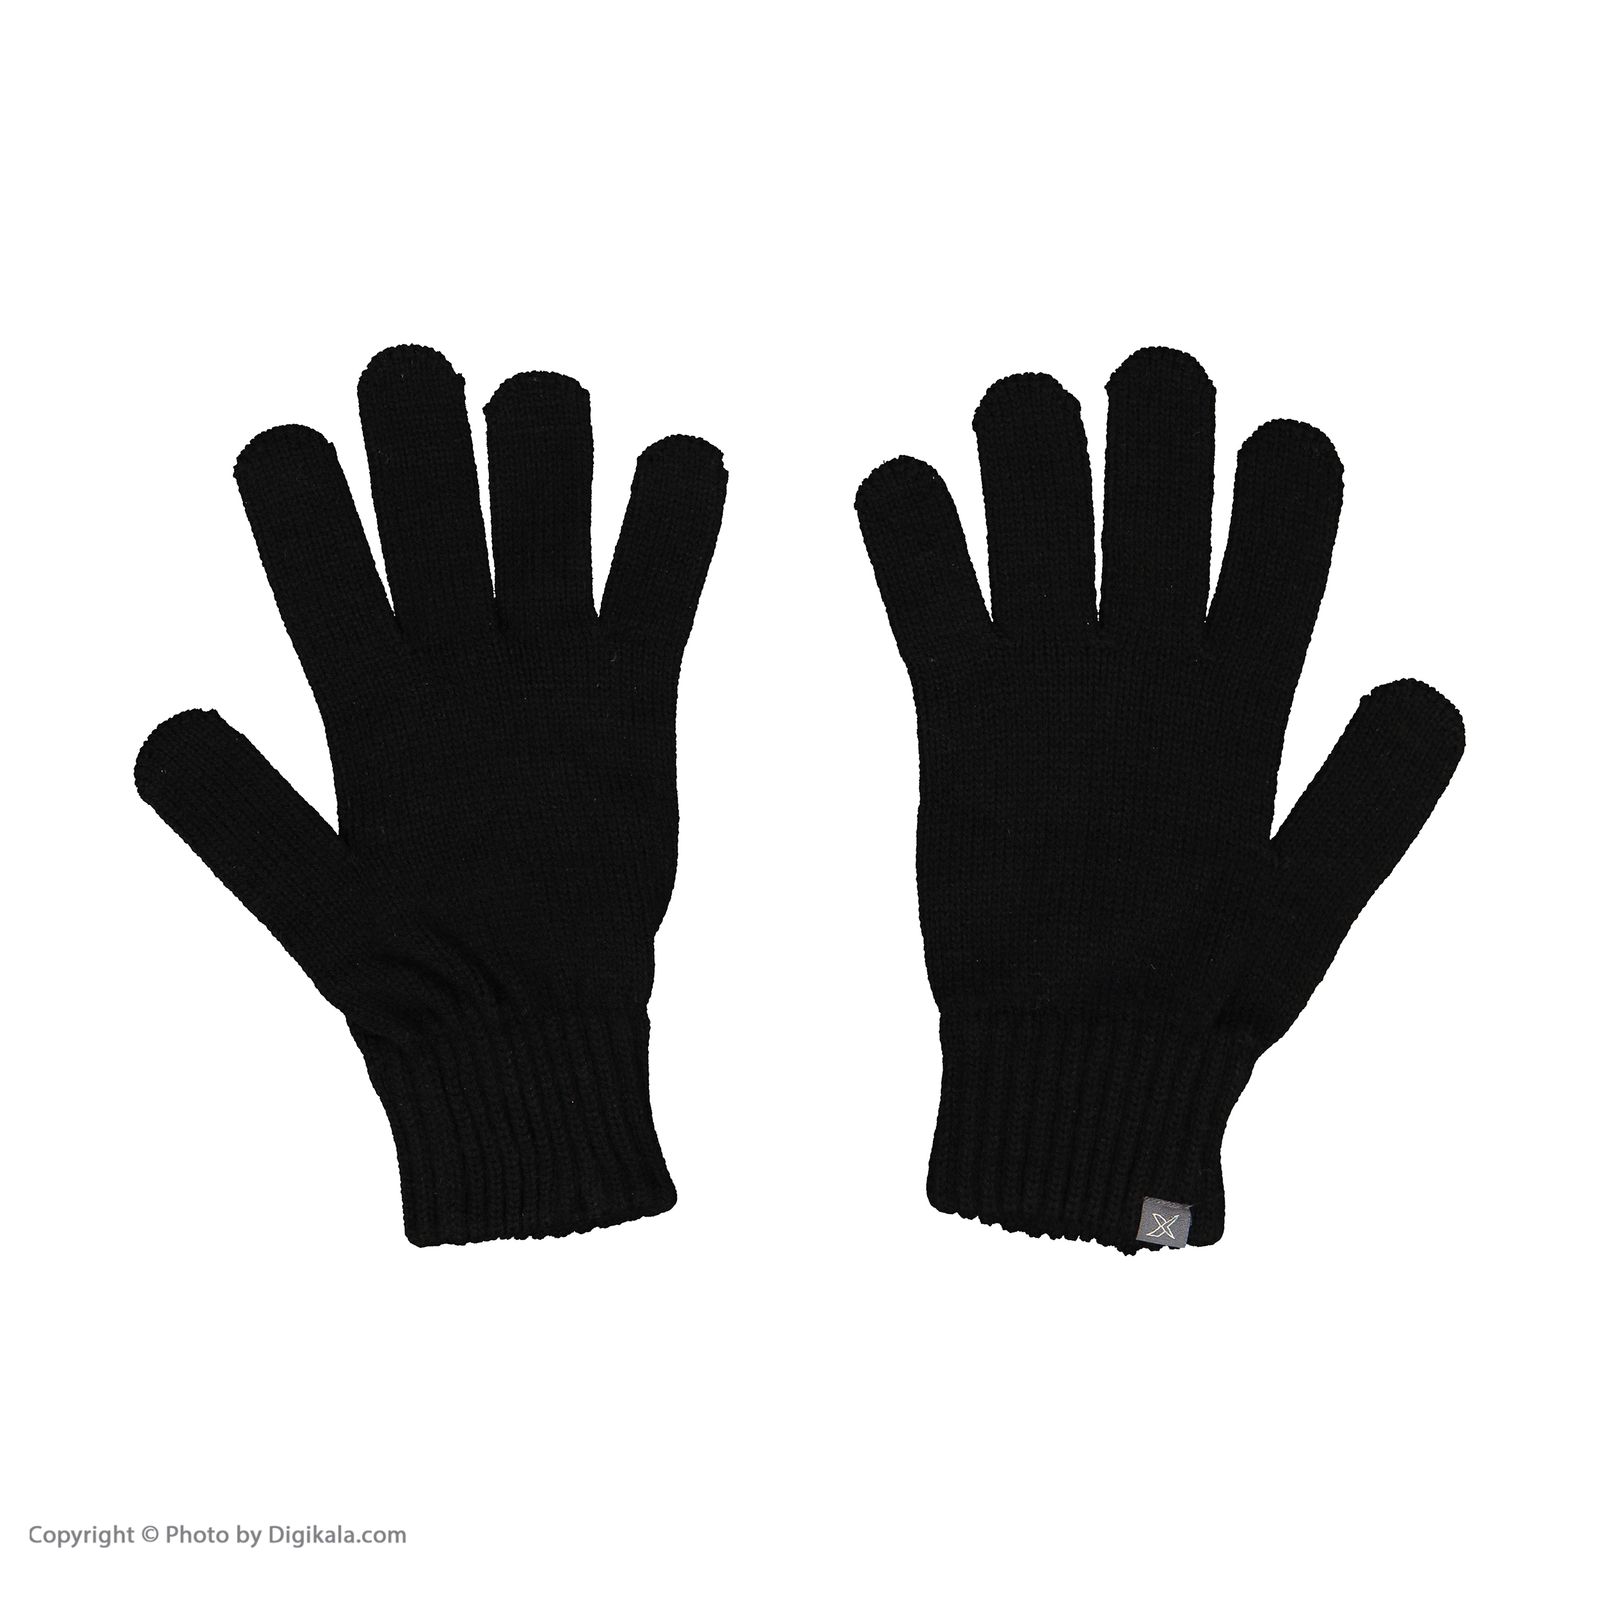 دستکش مردانه کینتیکس مدل 100223998 Black -  - 4